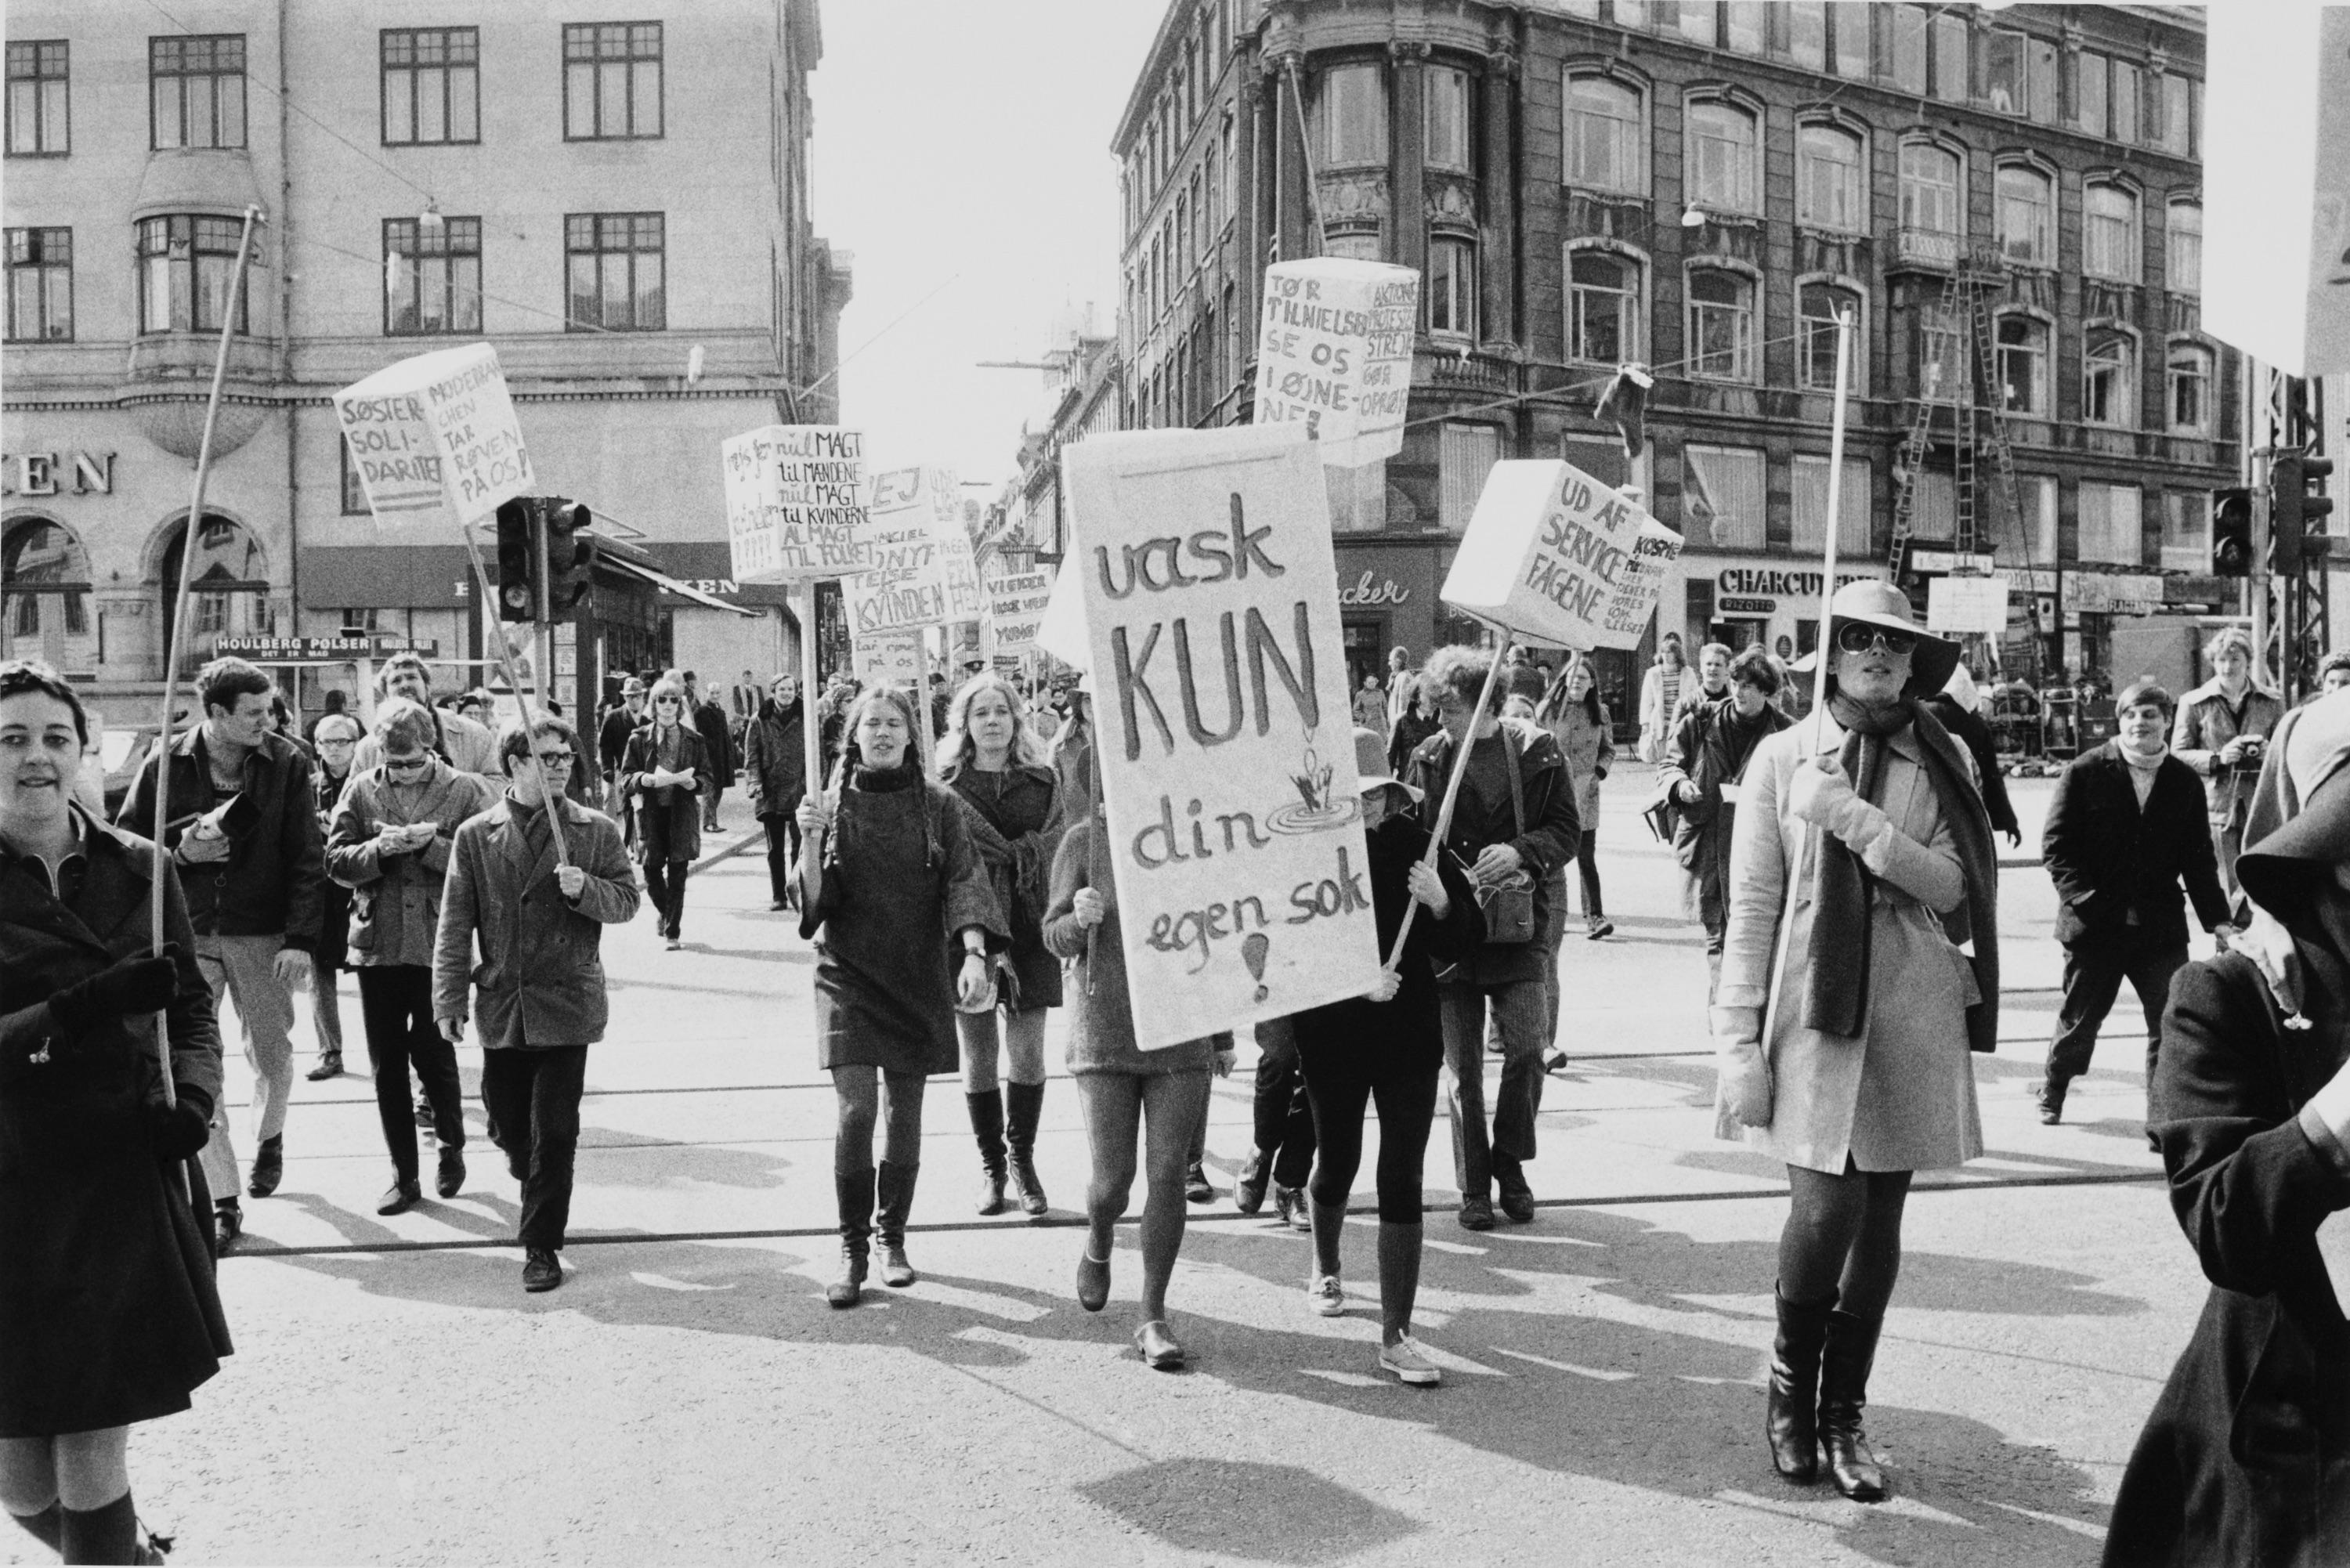 70’ernes kvindekamp har formentlig banet vejen for mere ligestilling mellem kønnene i dansk politik. Alligevel står det stadig relativt sløjt til i de kommunale råd, hvor kvinder stadig udgør et markant mindretal. 
Foto: Jesper Stormly Hansen / Polfoto